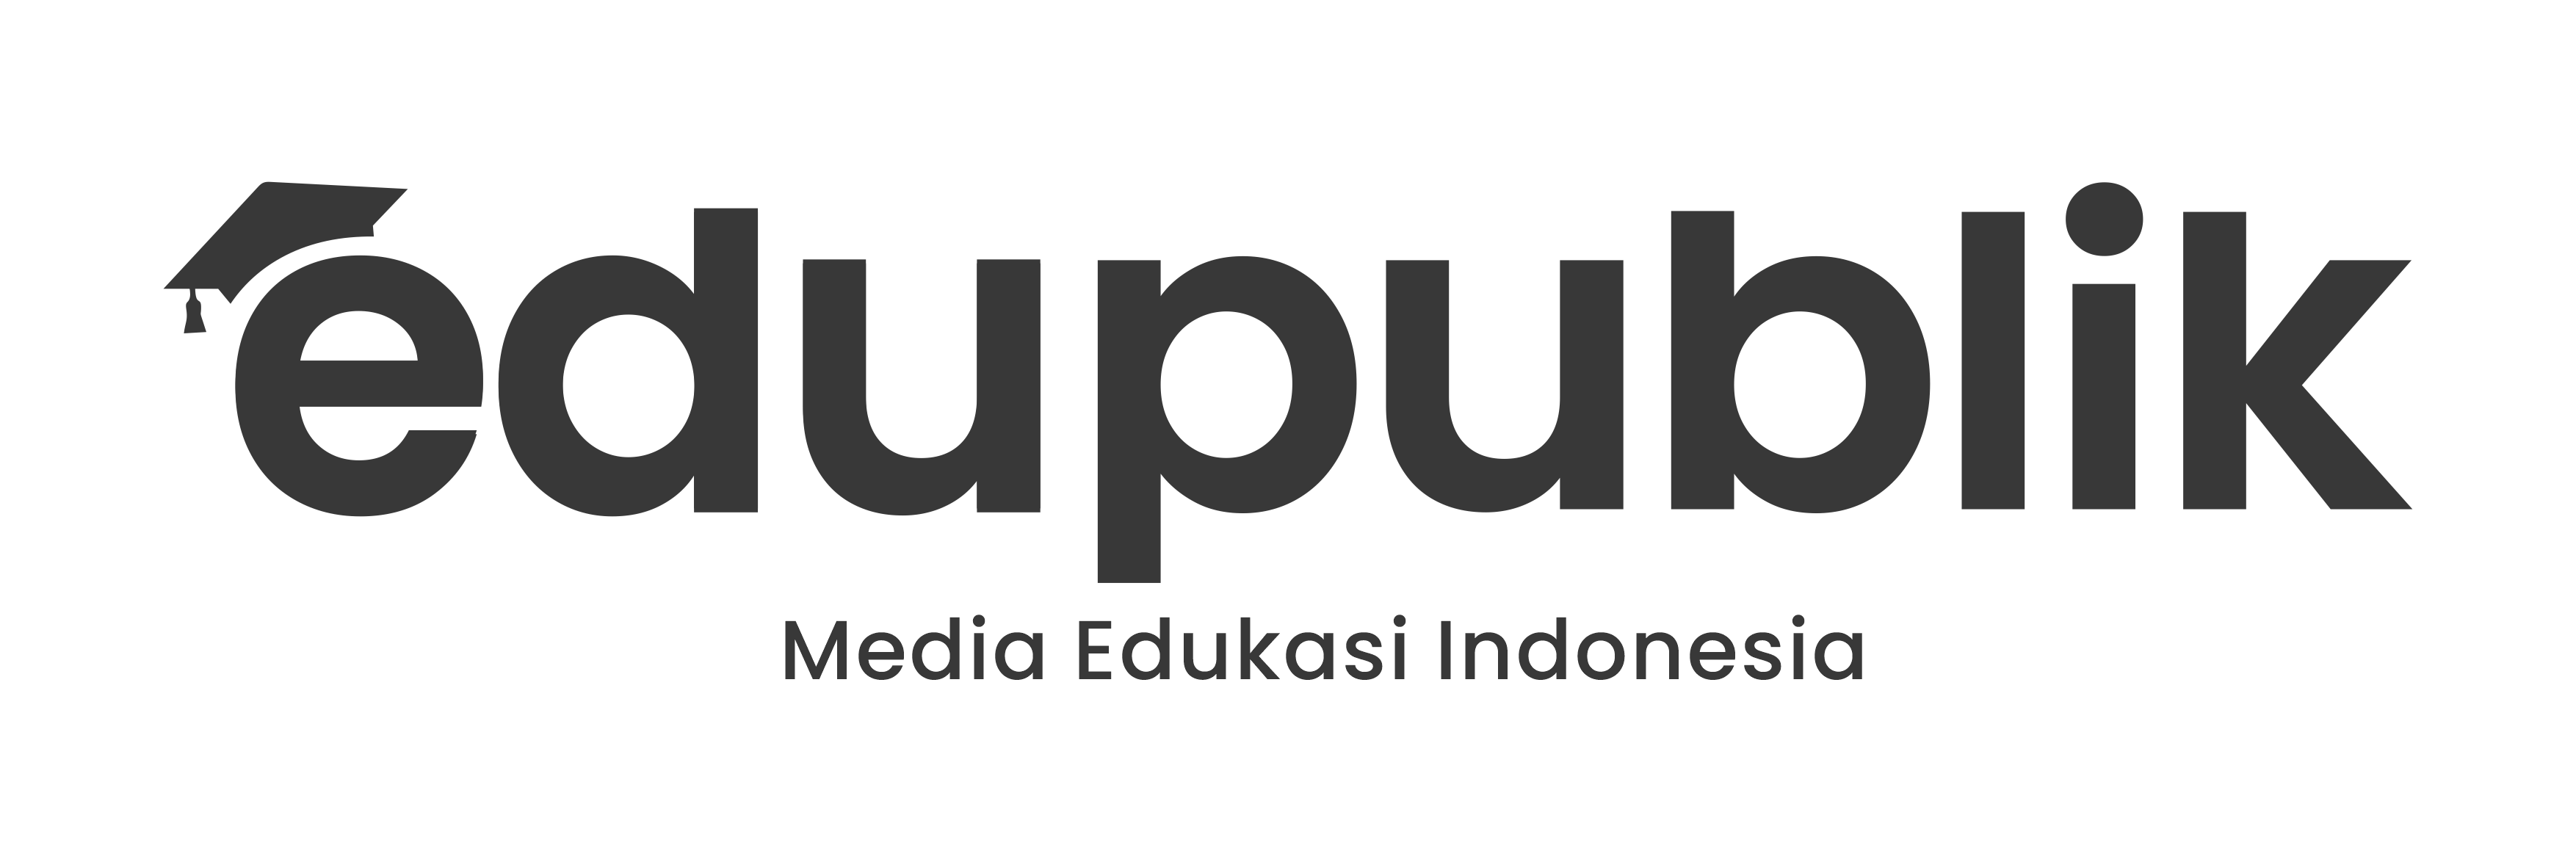 Media Edukasi Indonesia